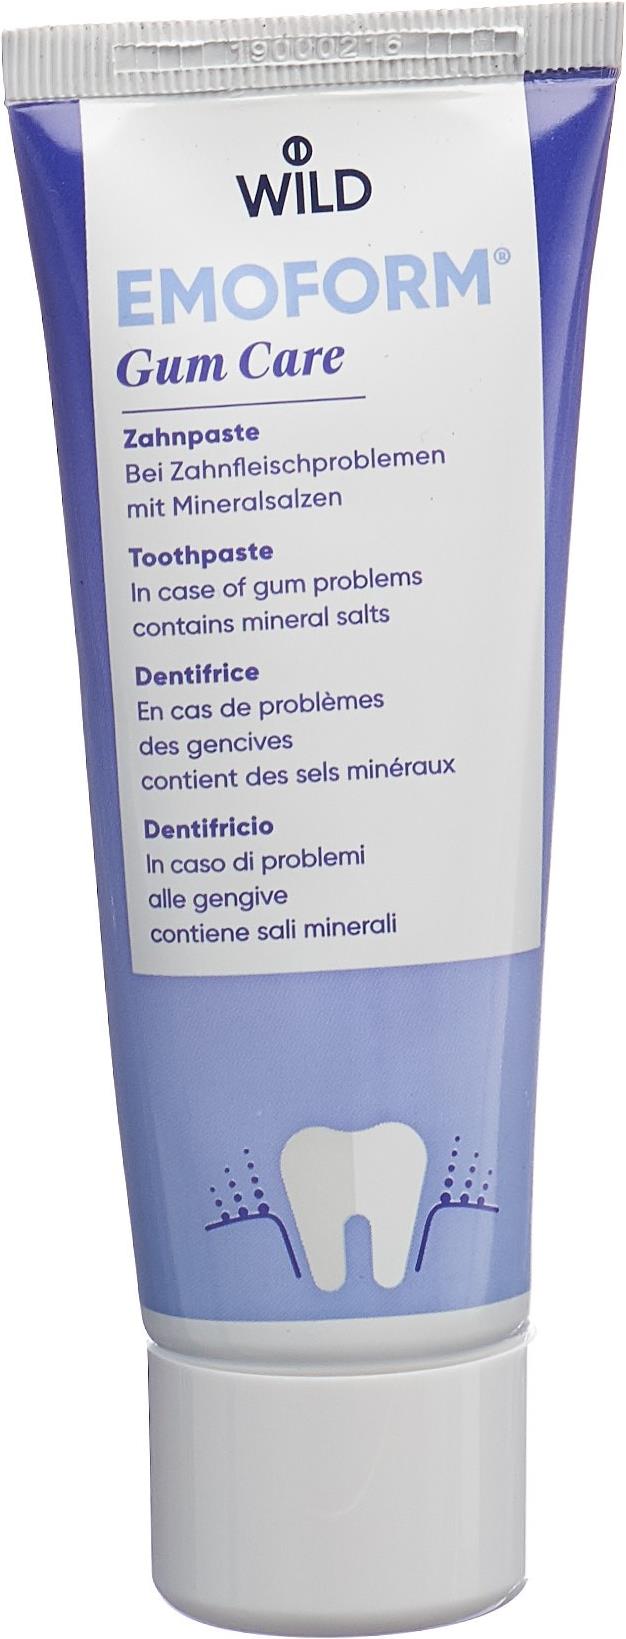 Emoform gum care Zahnpaste (75 ml) kaufen